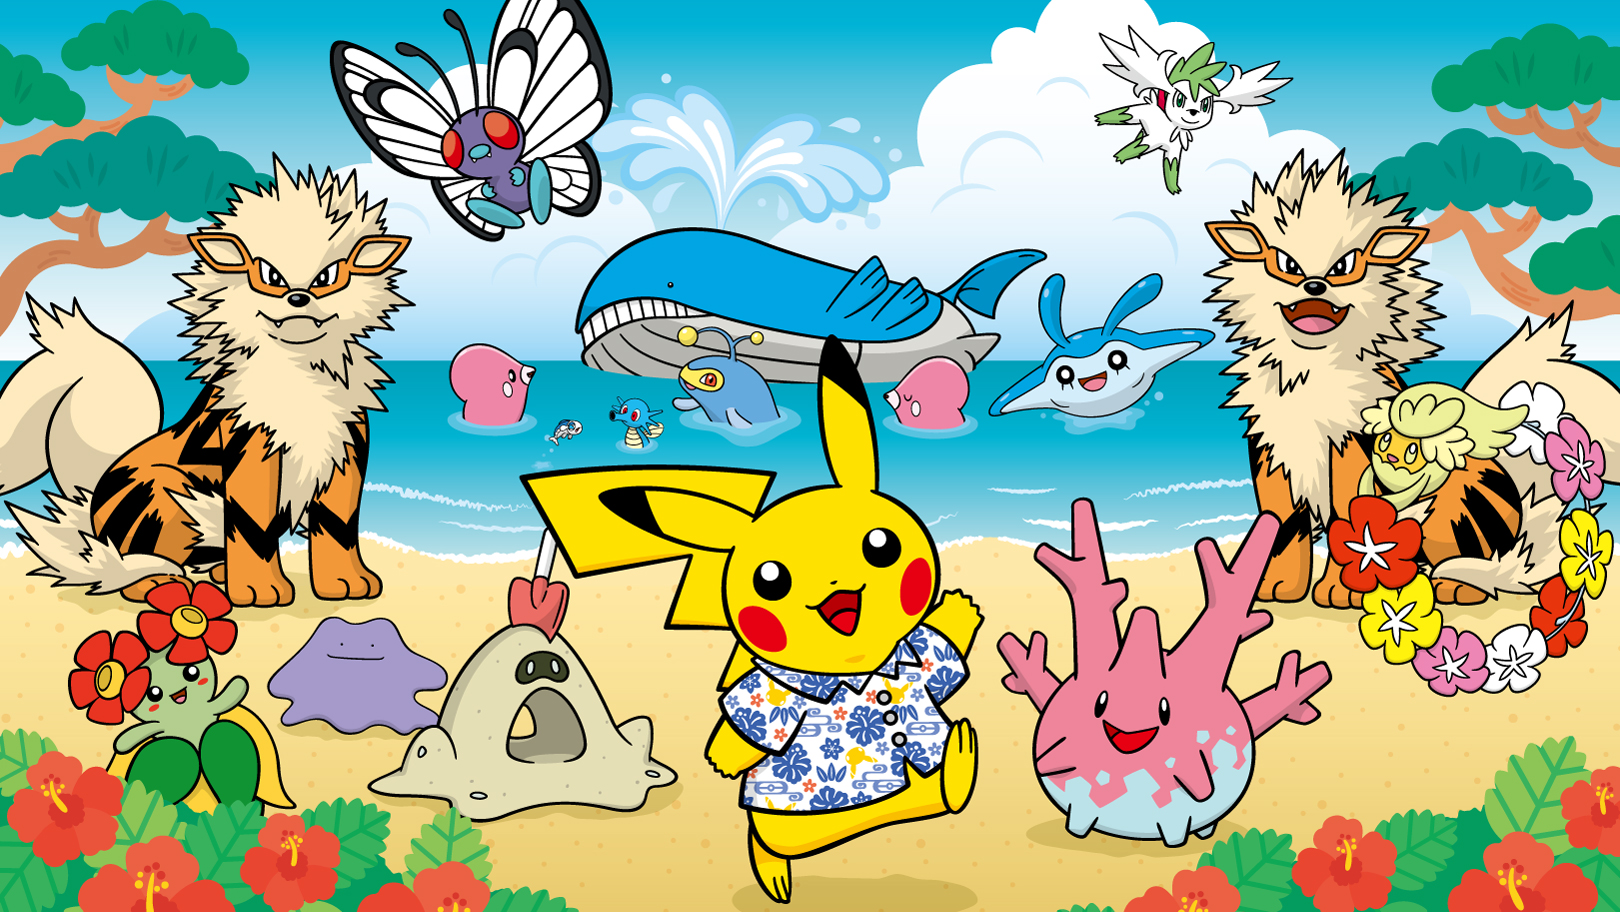 Plaid Pokémon - Flying Pikachu - Okinawa Exclusive